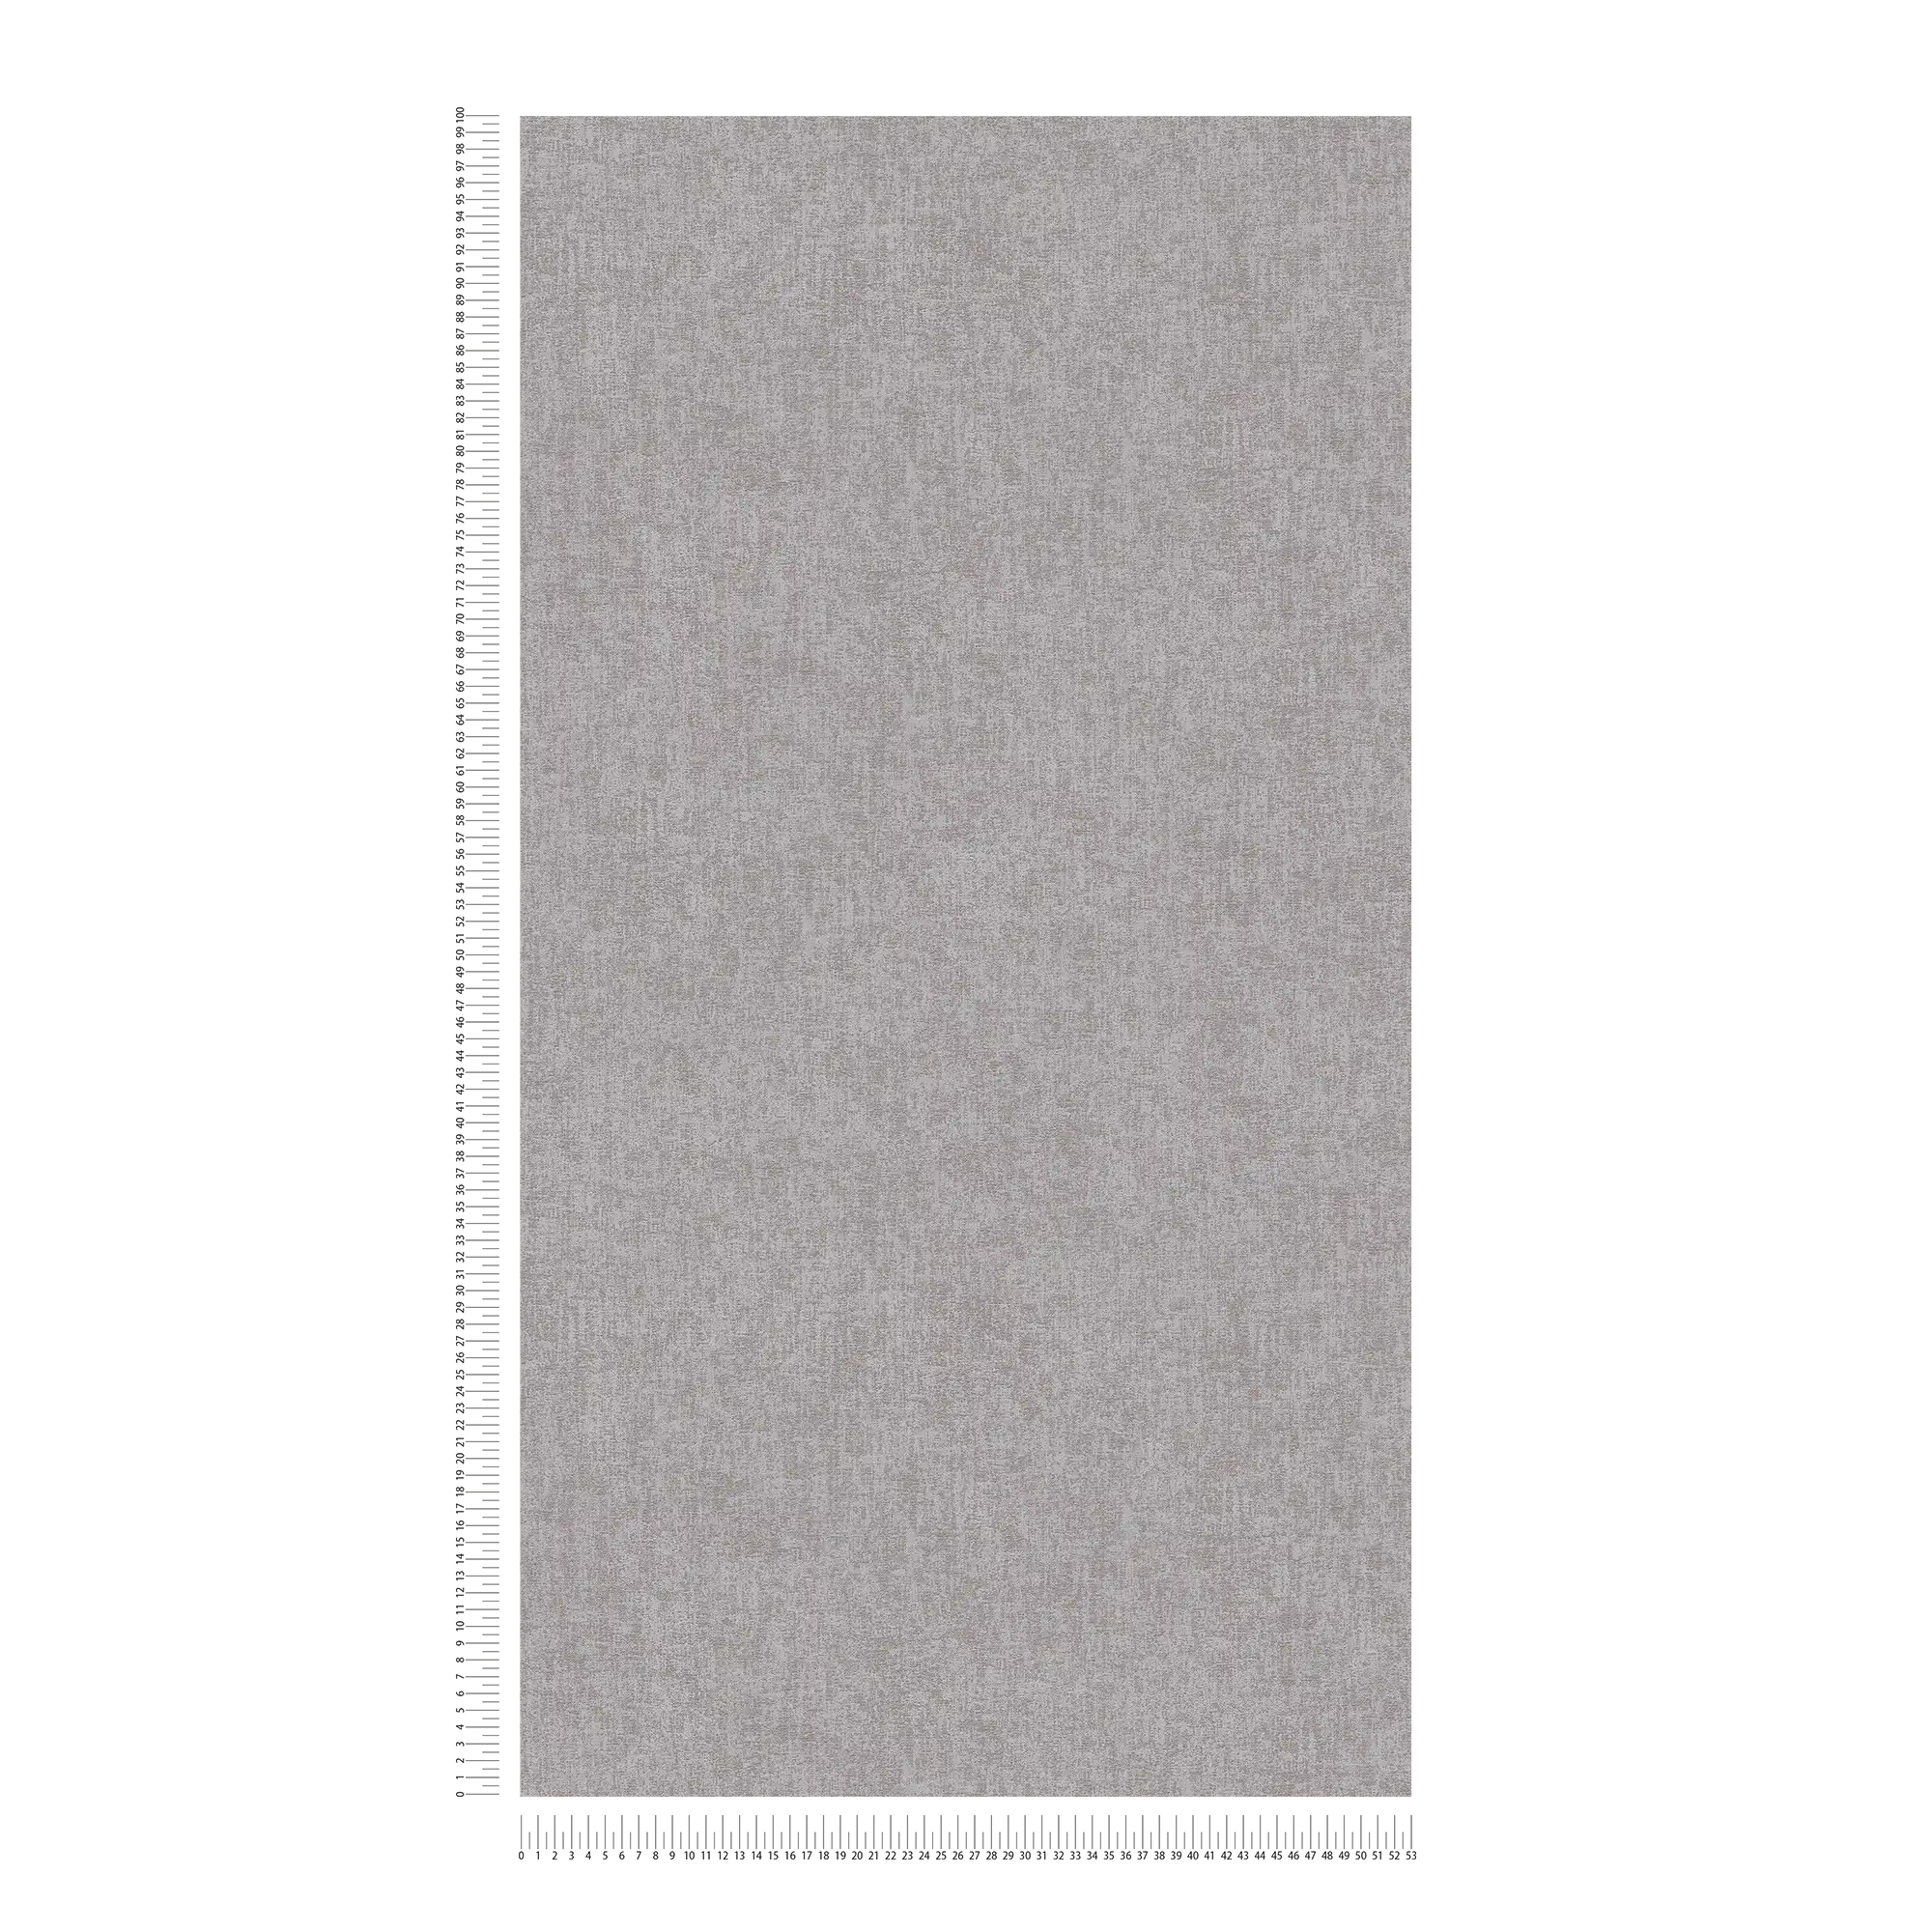             Carta da parati unitaria screziata con aspetto tessile - grigio, marrone
        